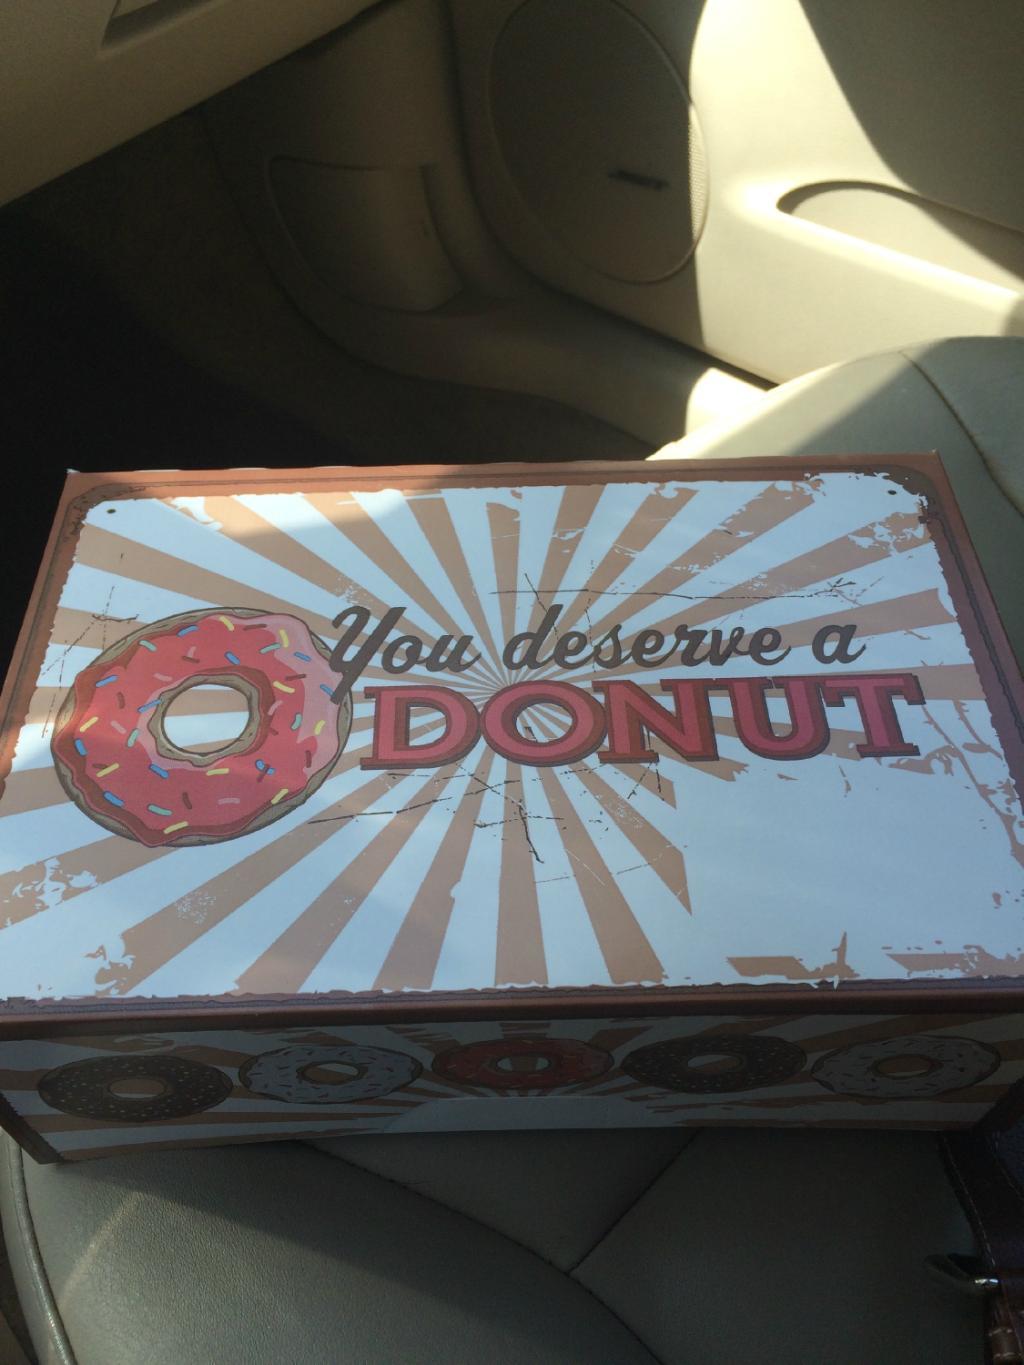 Lickin Good Donuts and Kolaches